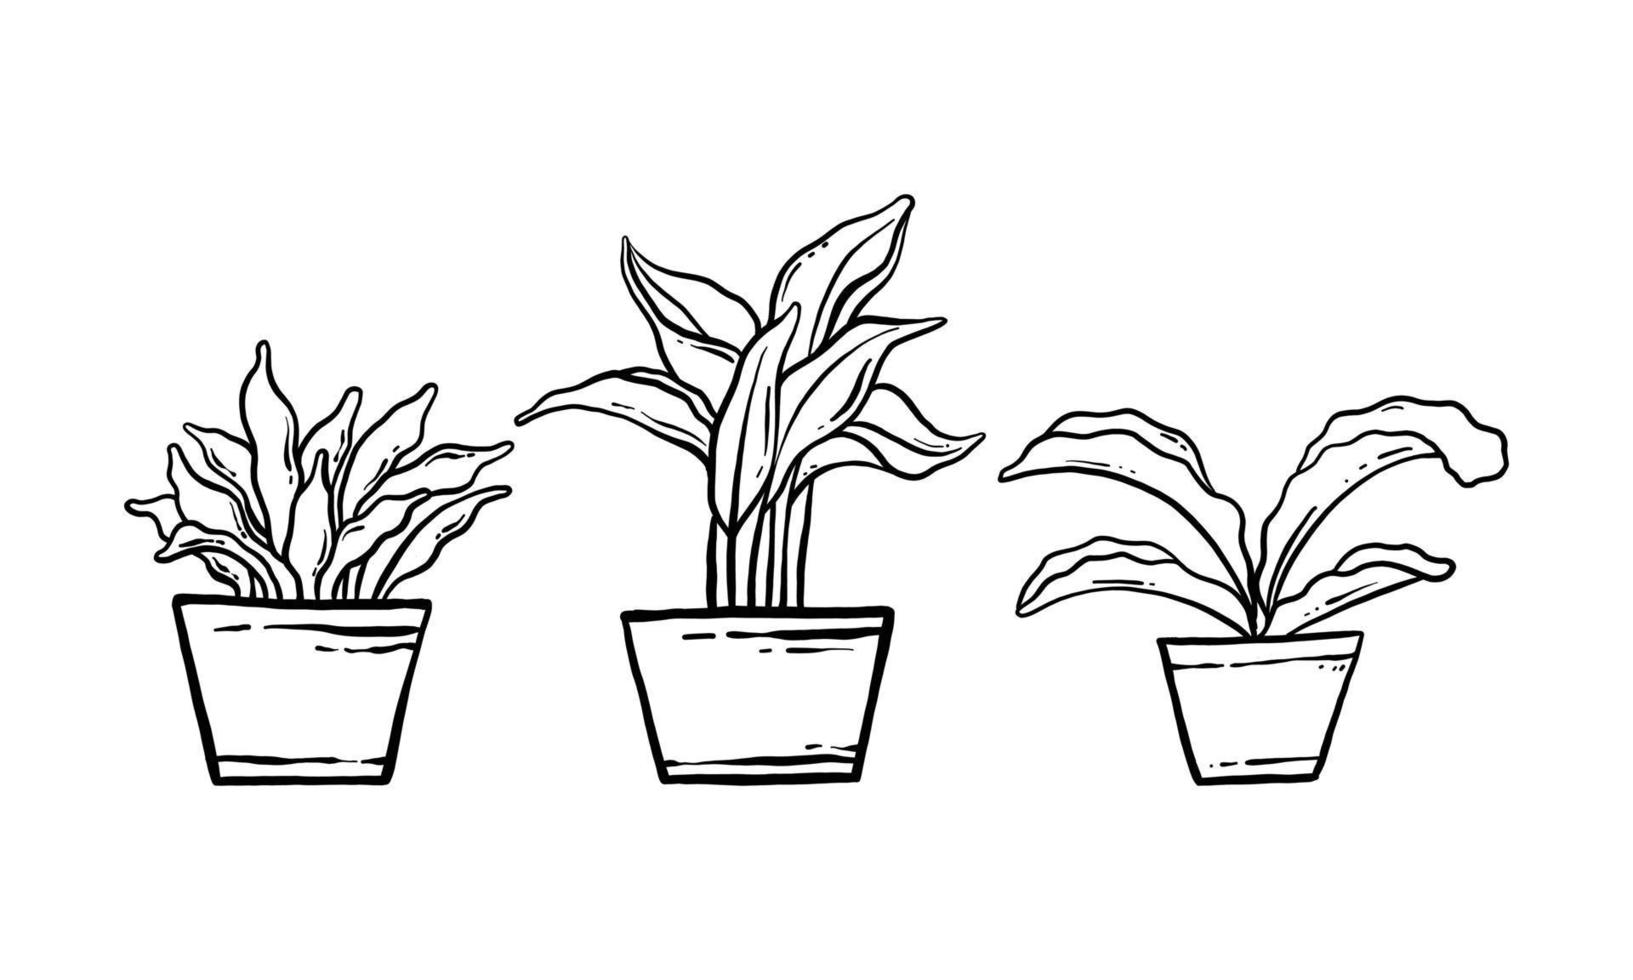 krukväxt handritad illustration. vektor linjekonst av krukväxt hem växt samling set. blommig växt isolerad på vit bakgrund.